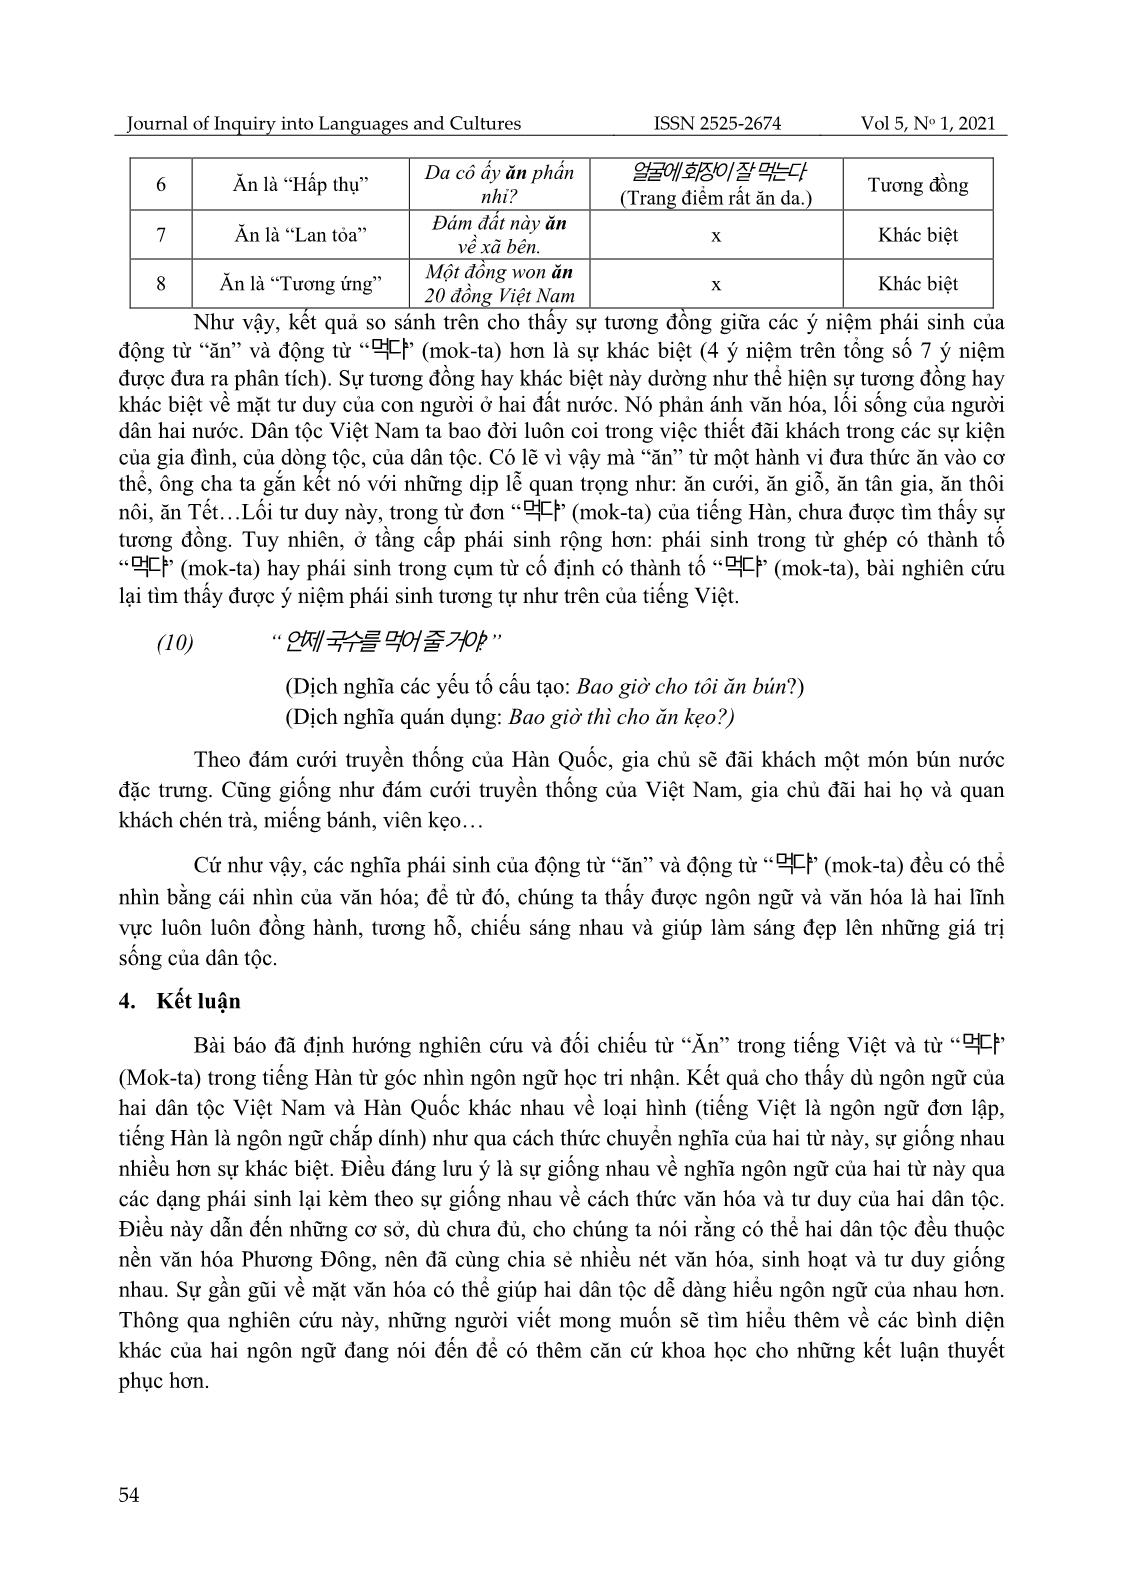 Đối chiếu từ đa nghĩa ăn trong tiếng Việt và ‘먹다’ (mok-ta) trong tiếng Hàn dưới góc nhìn ngôn ngữ học tri nhận trang 8